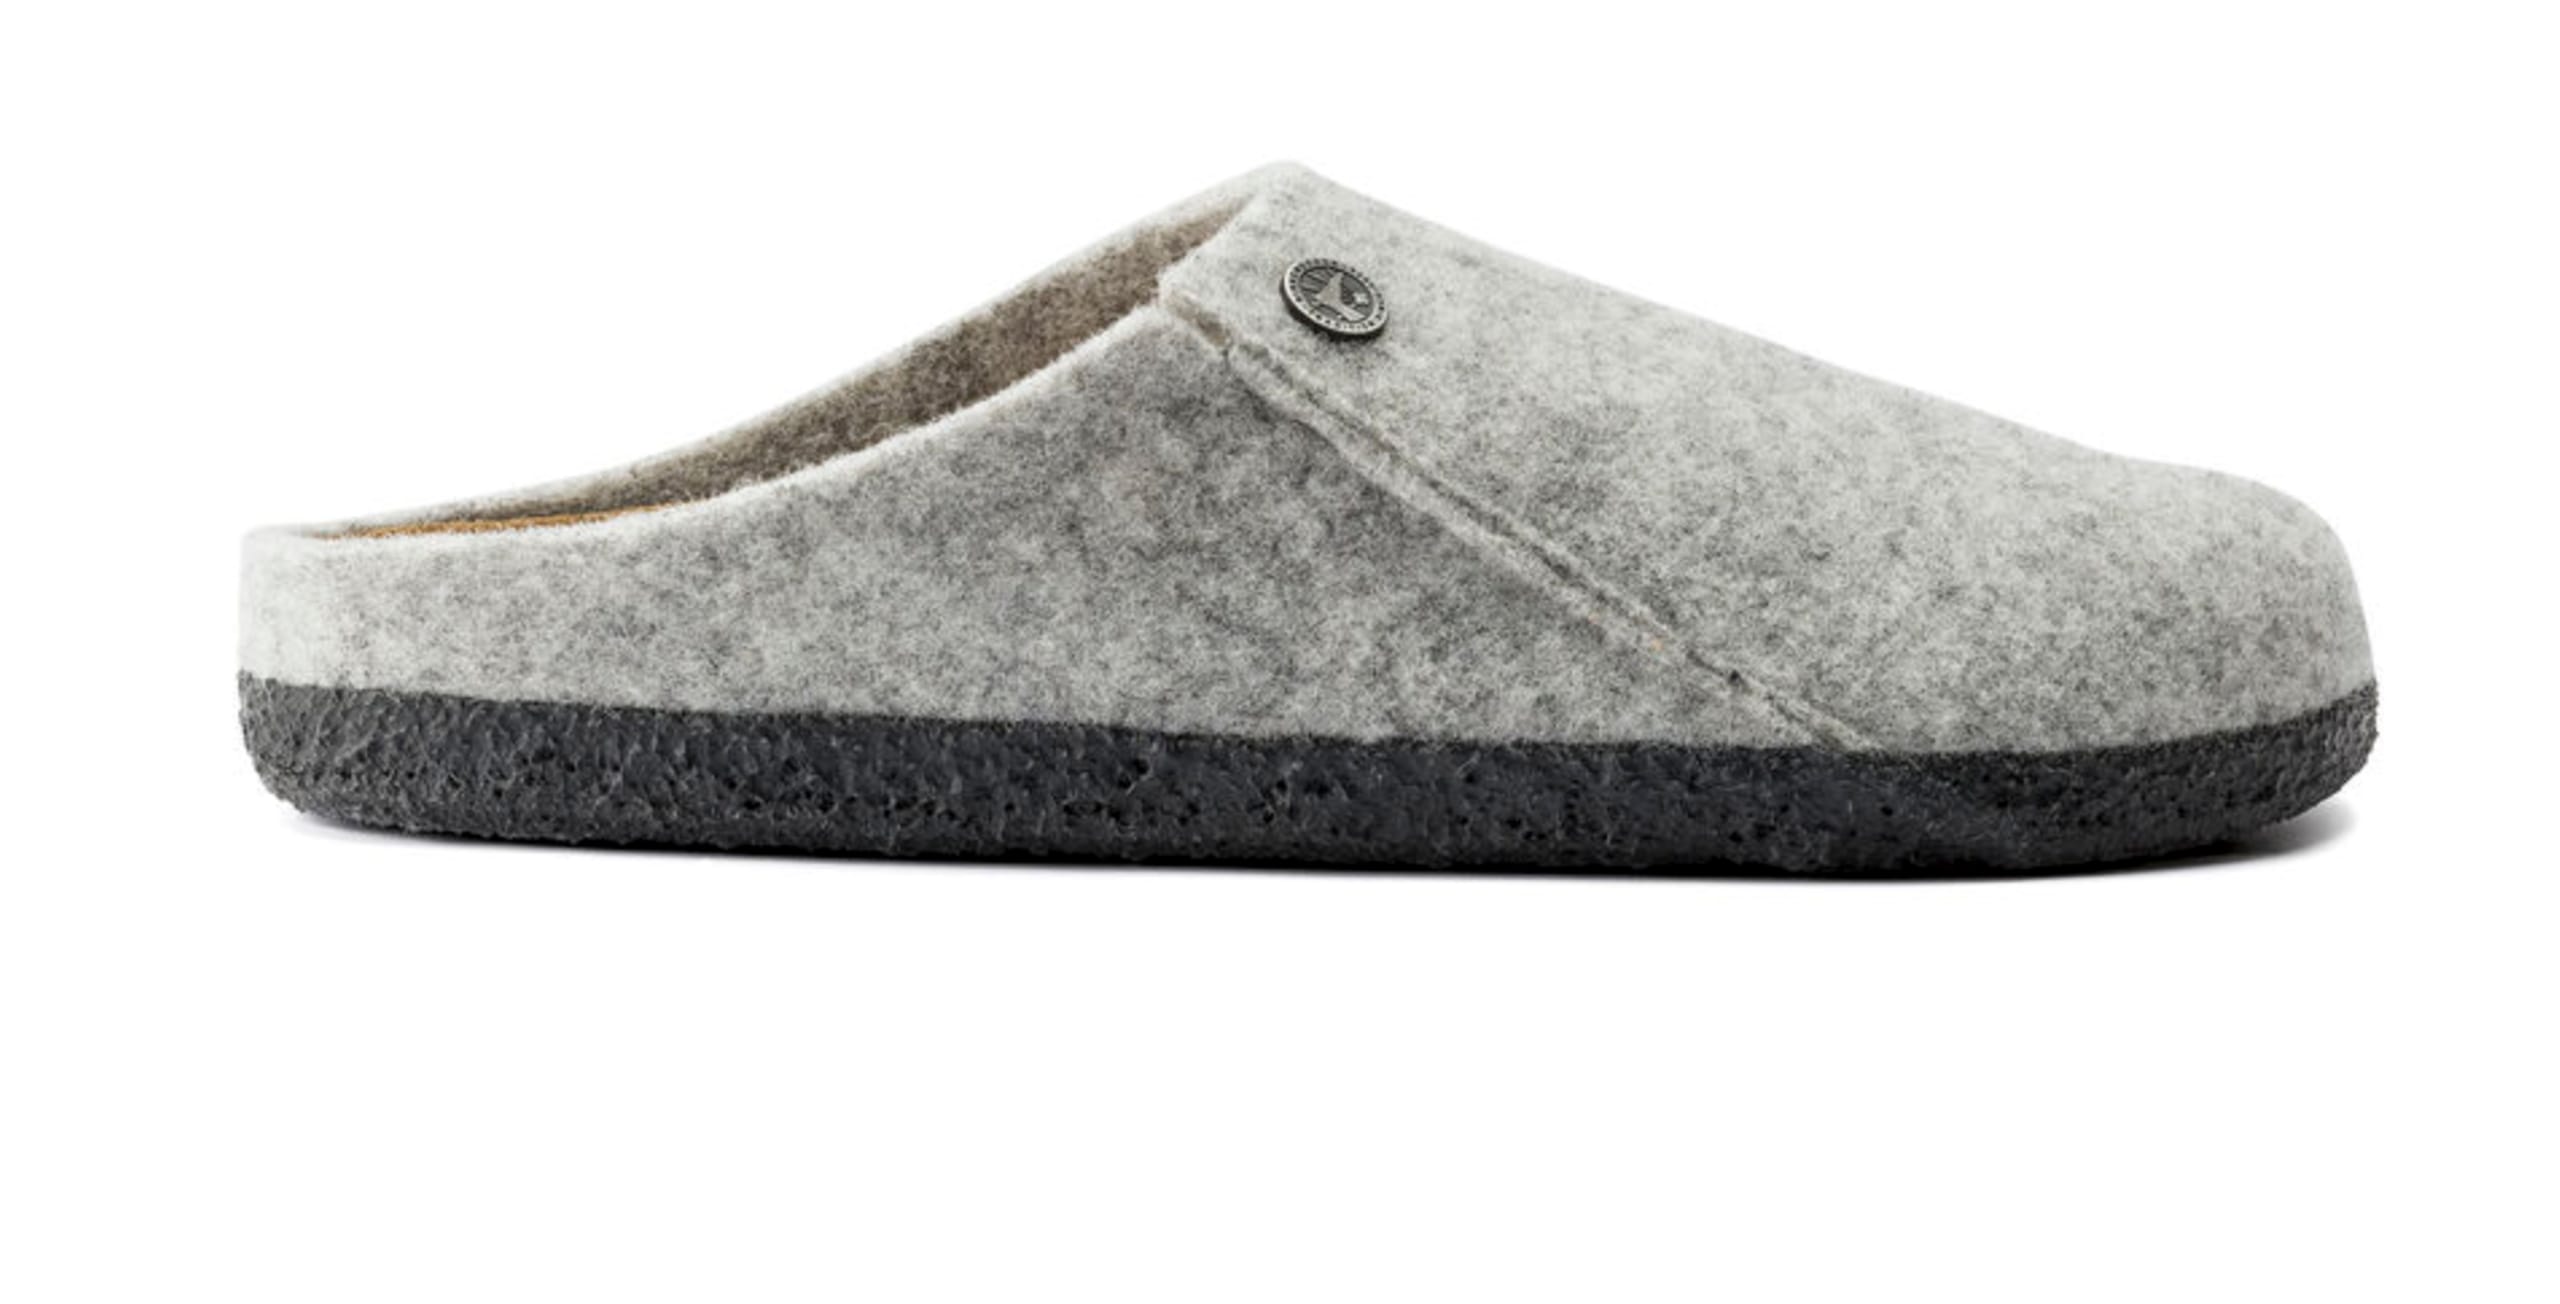 Birkenstock - Shoes - Zermatt Standard Wool Felt - Light Grey